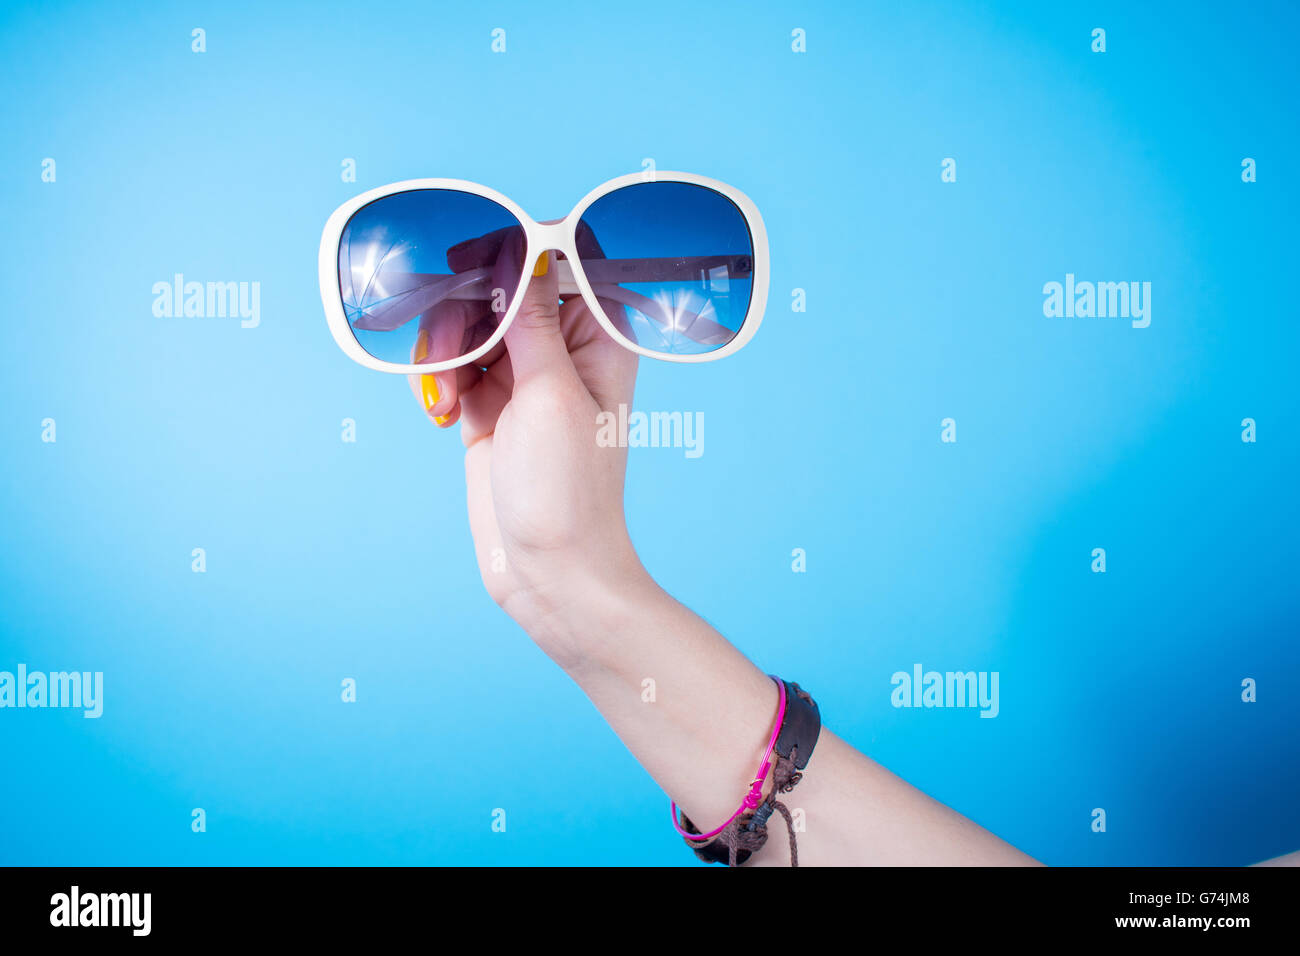 Woman holding big sunglasses contre fond bleu Banque D'Images